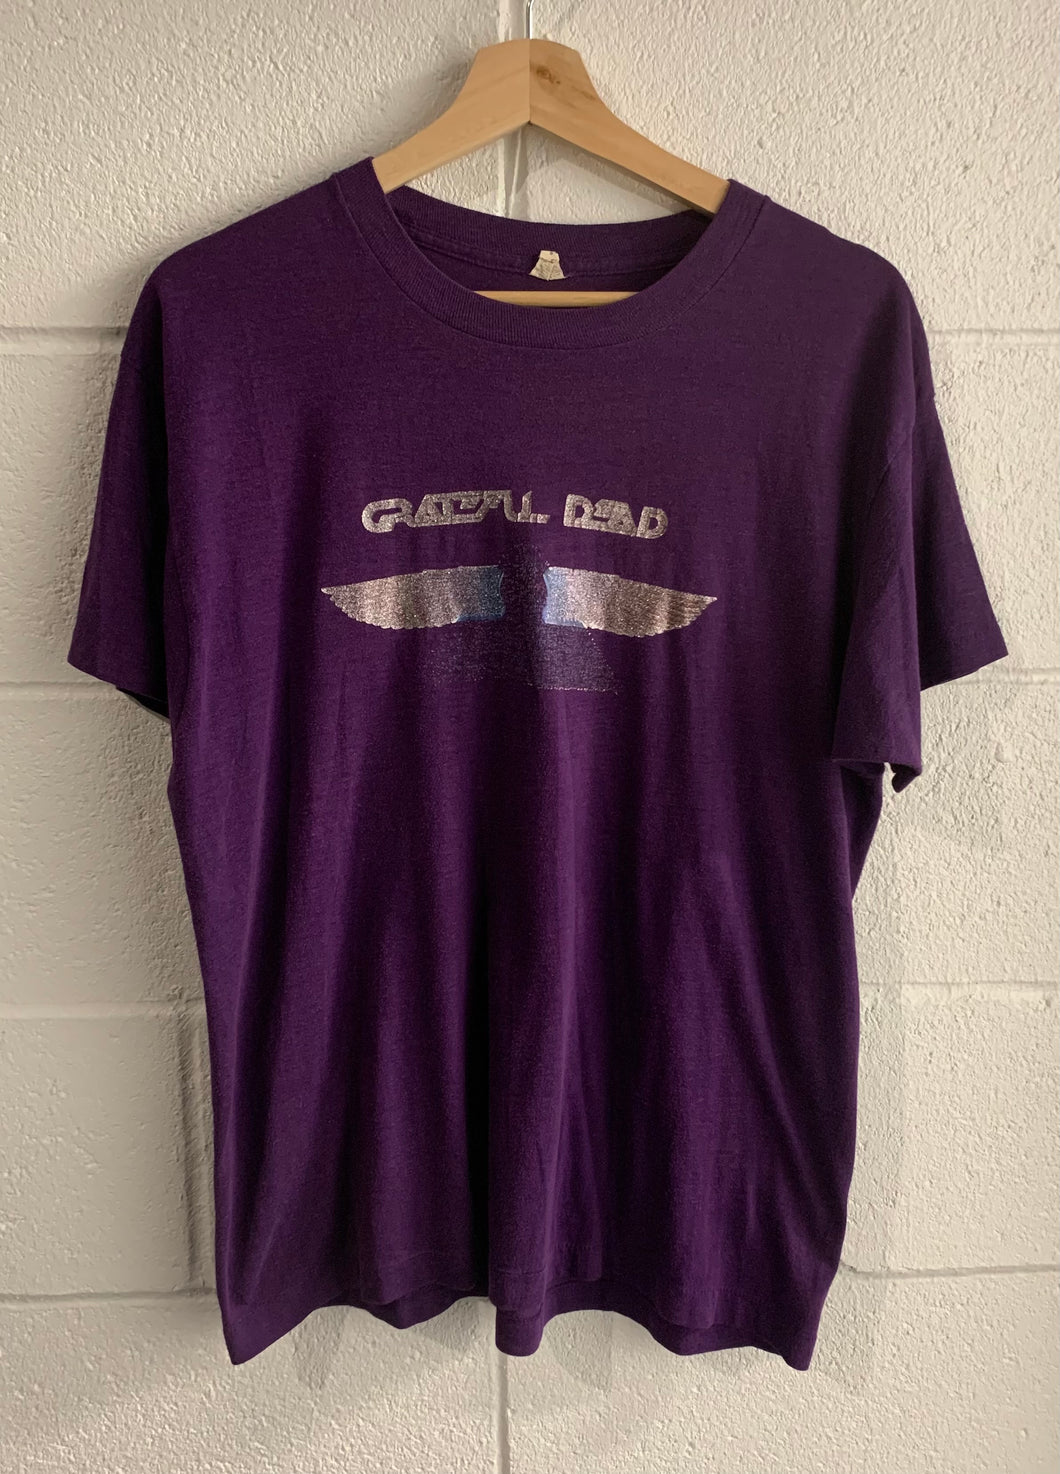 80s Grateful Dead tee shirt